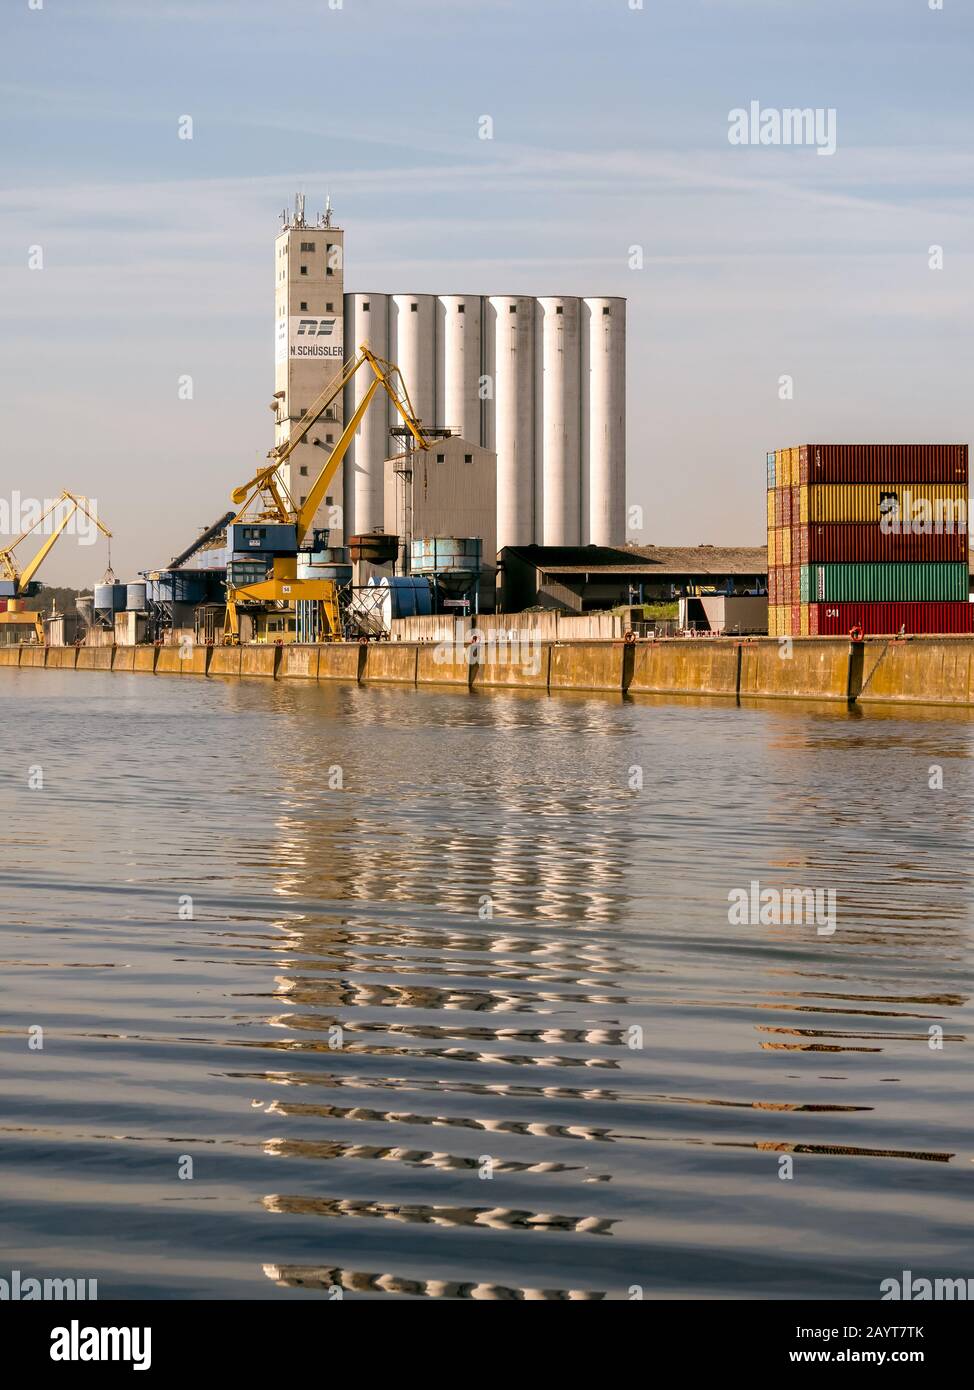 NUREMBERG, ALLEMAGNE -10 JUILLET 2019: Silos et conteneurs industriels dans une zone industrielle en dehors de la ville Banque D'Images